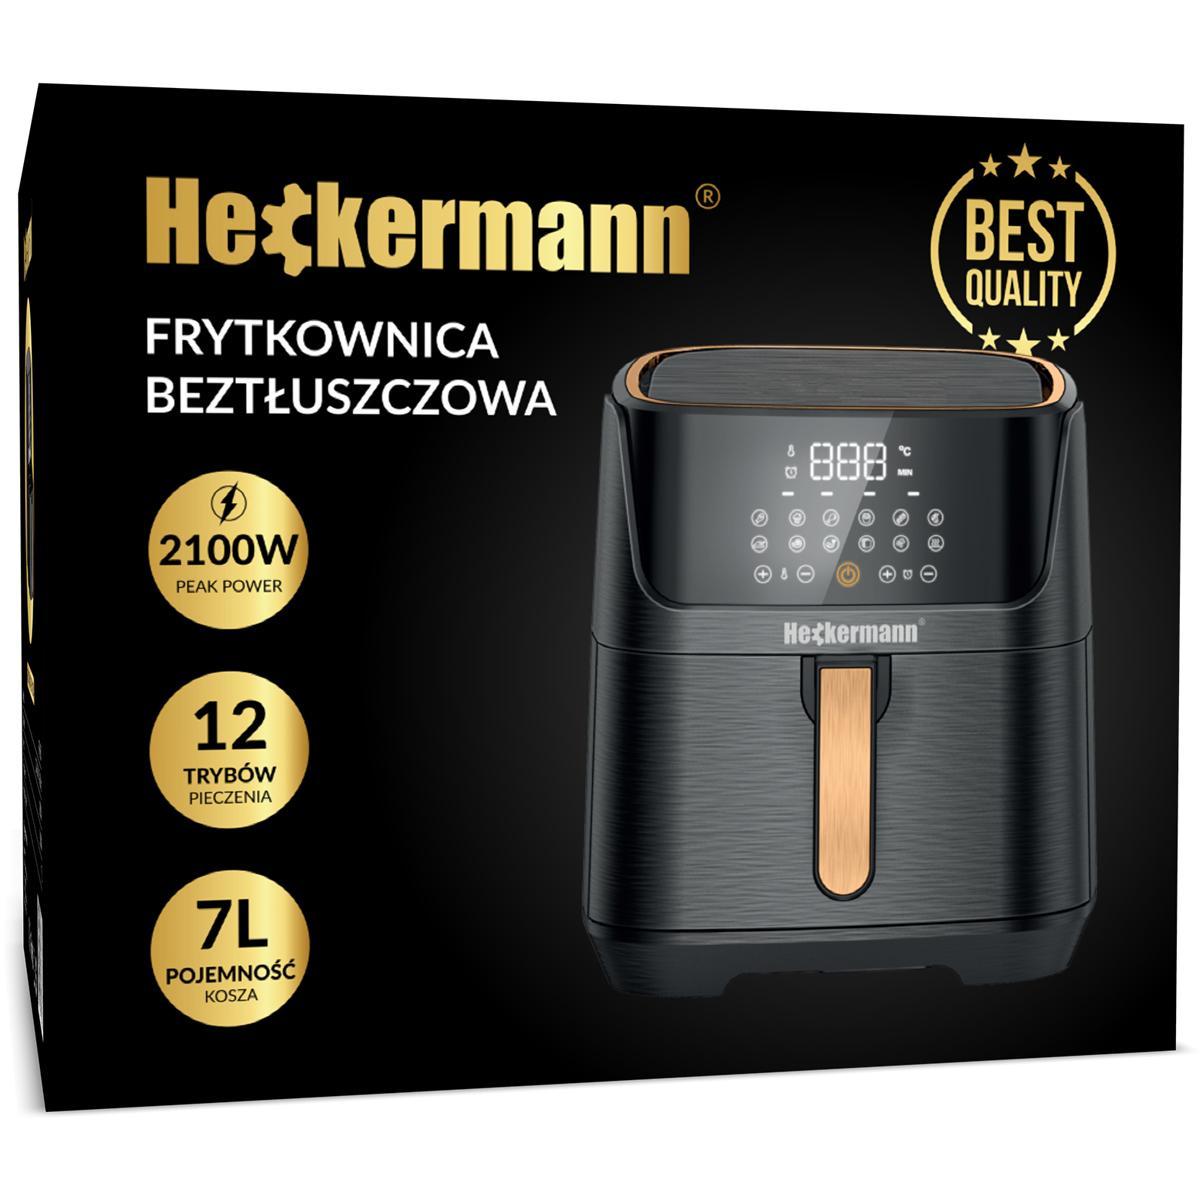  Frytkownica beztłuszczowa 7L Heckermann® HF-8850 nr. 11